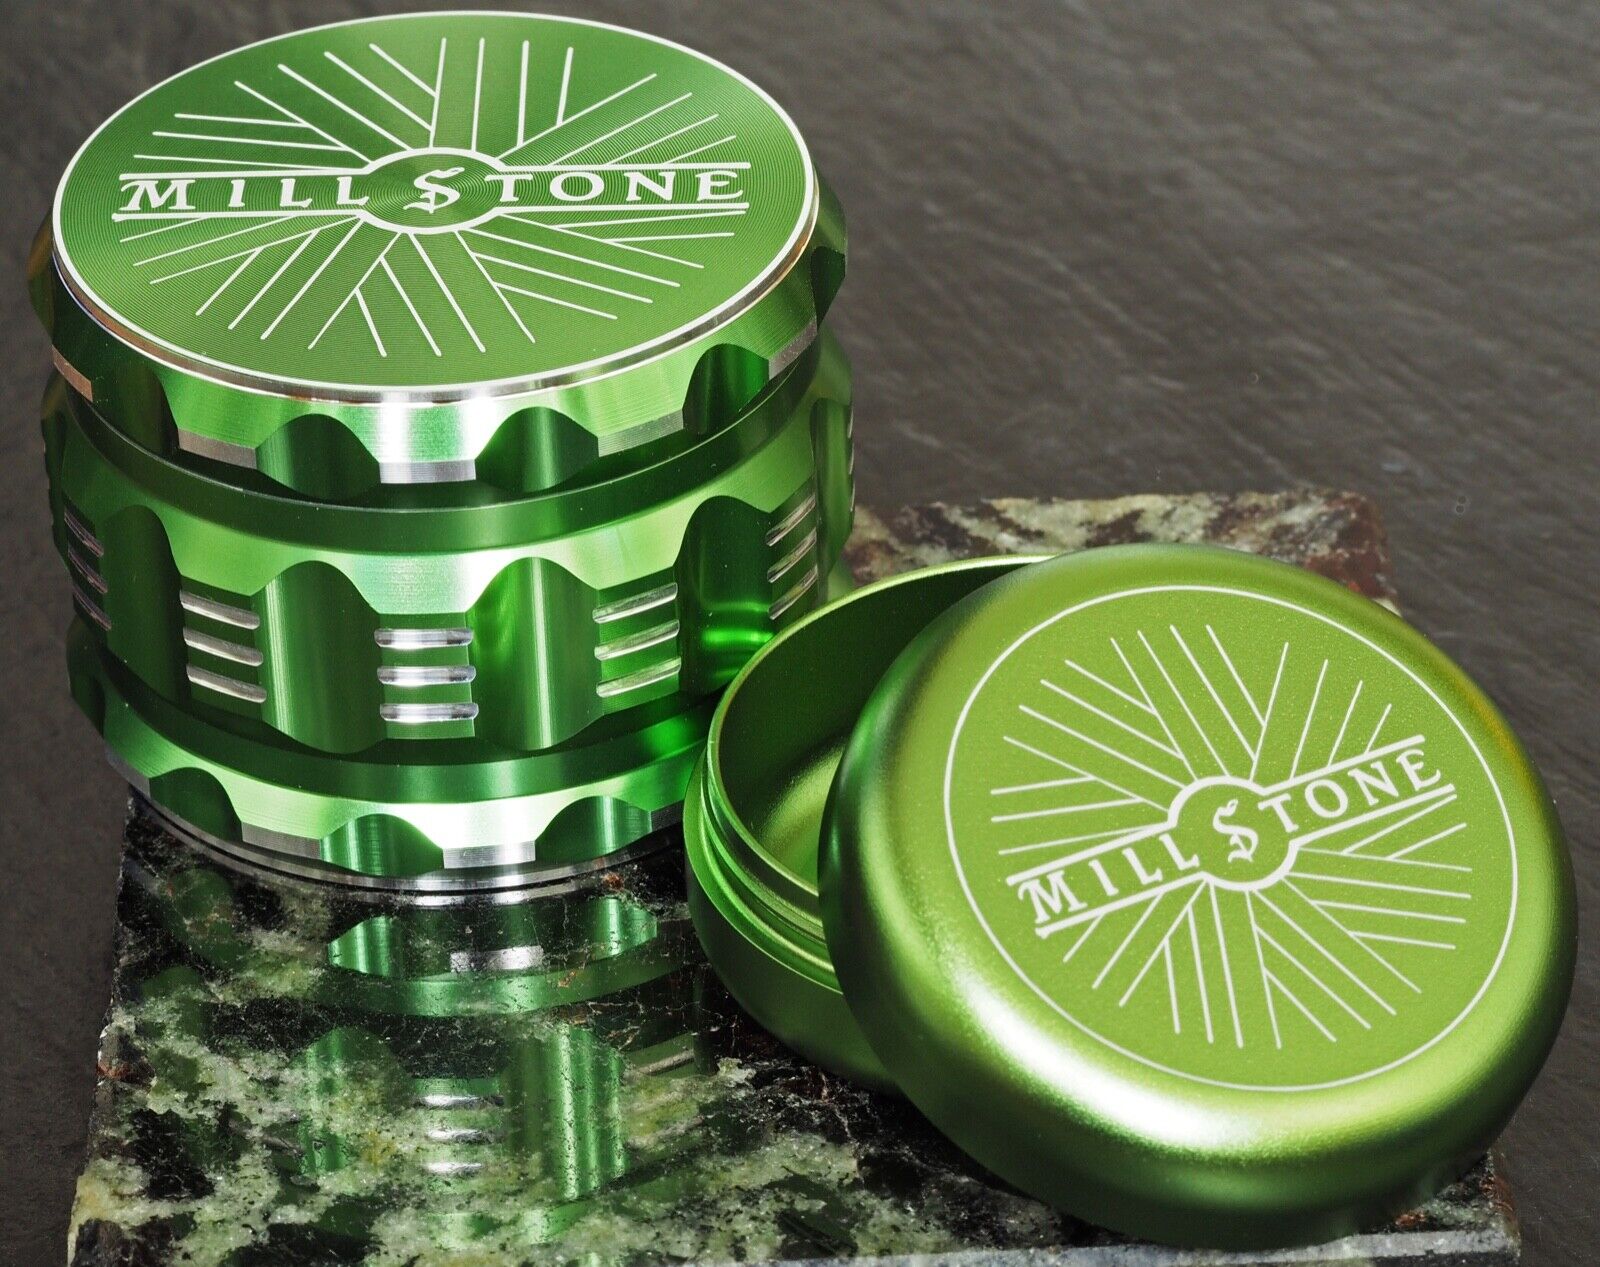 Millstone Tobacco Herb Grinder & Storage Tin Jar Metal 2.5 inch 4-Piece Green